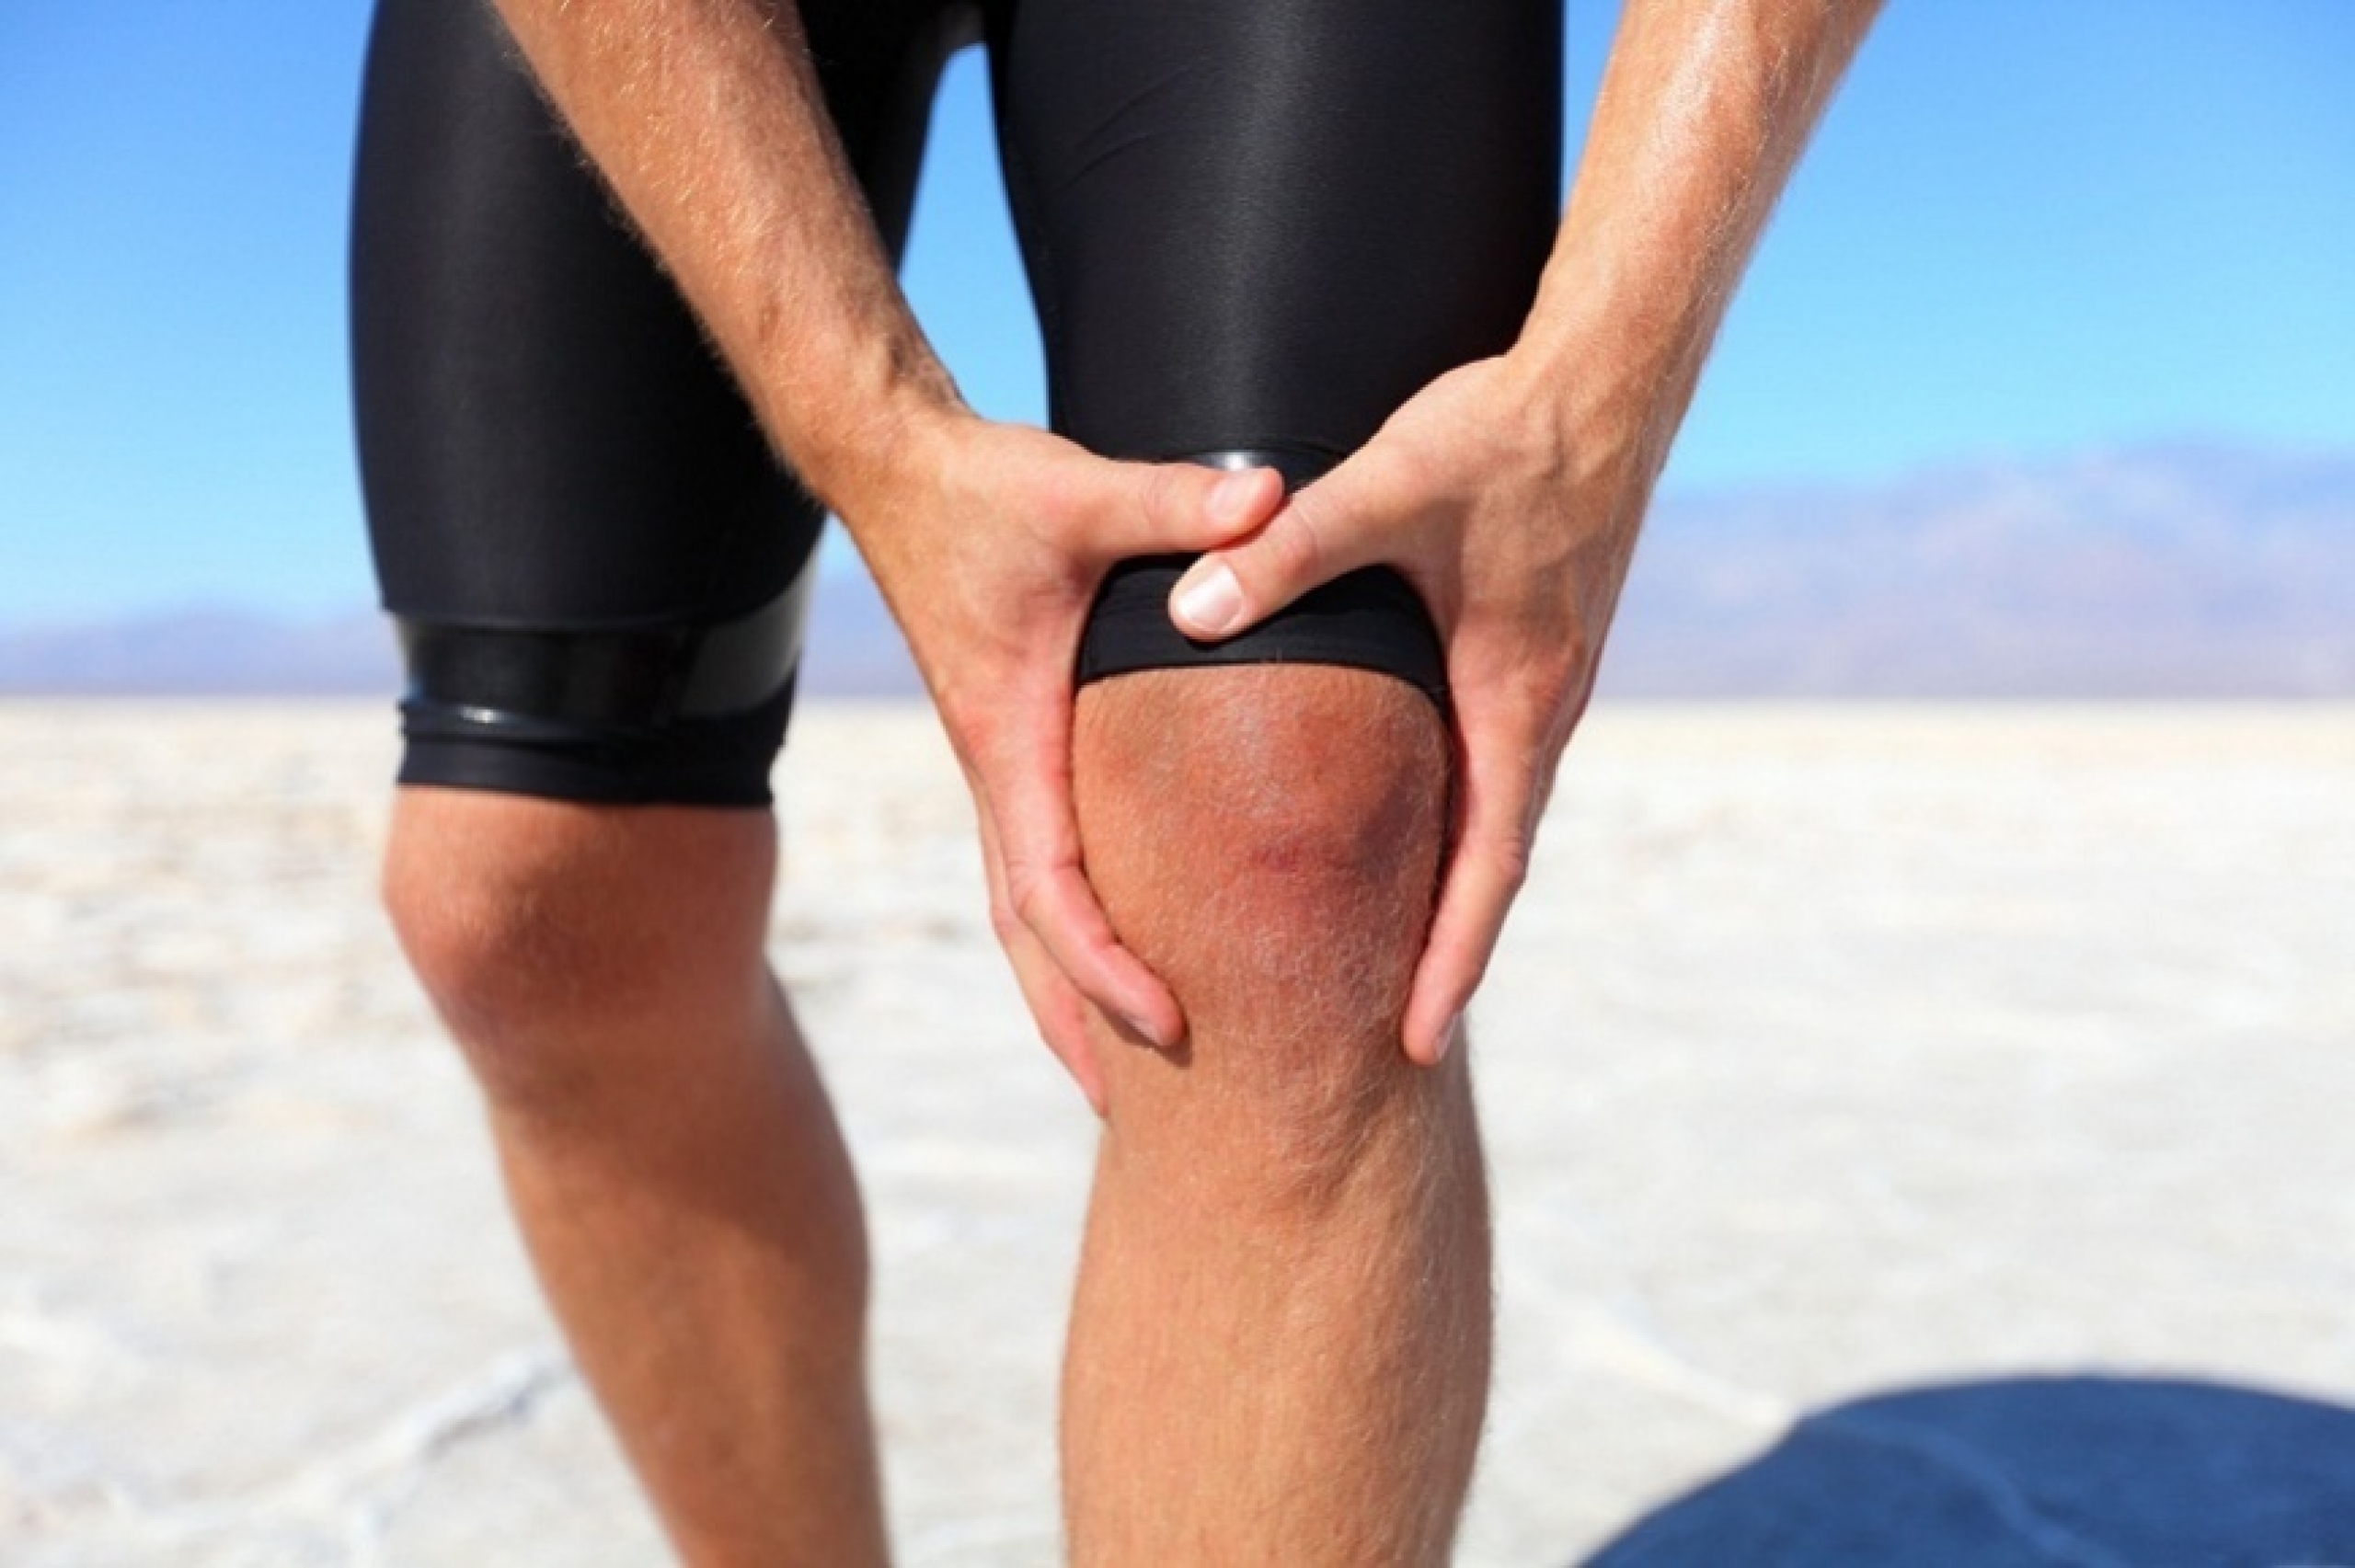 Восстановление коленных суставов